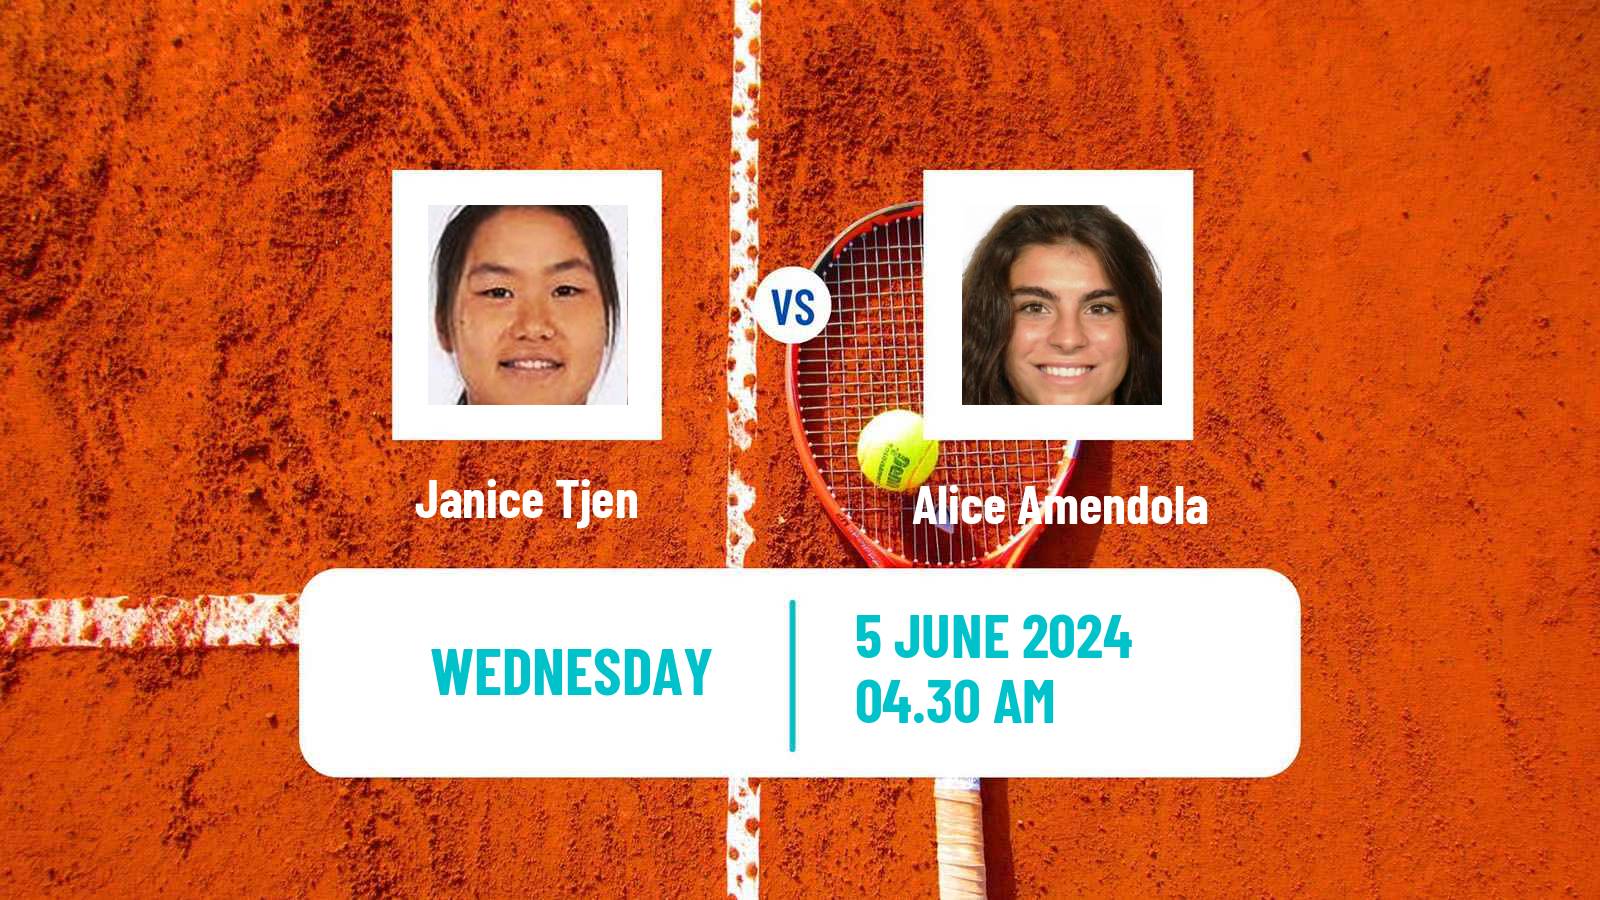 Tennis ITF W15 Monastir 21 Women Janice Tjen - Alice Amendola